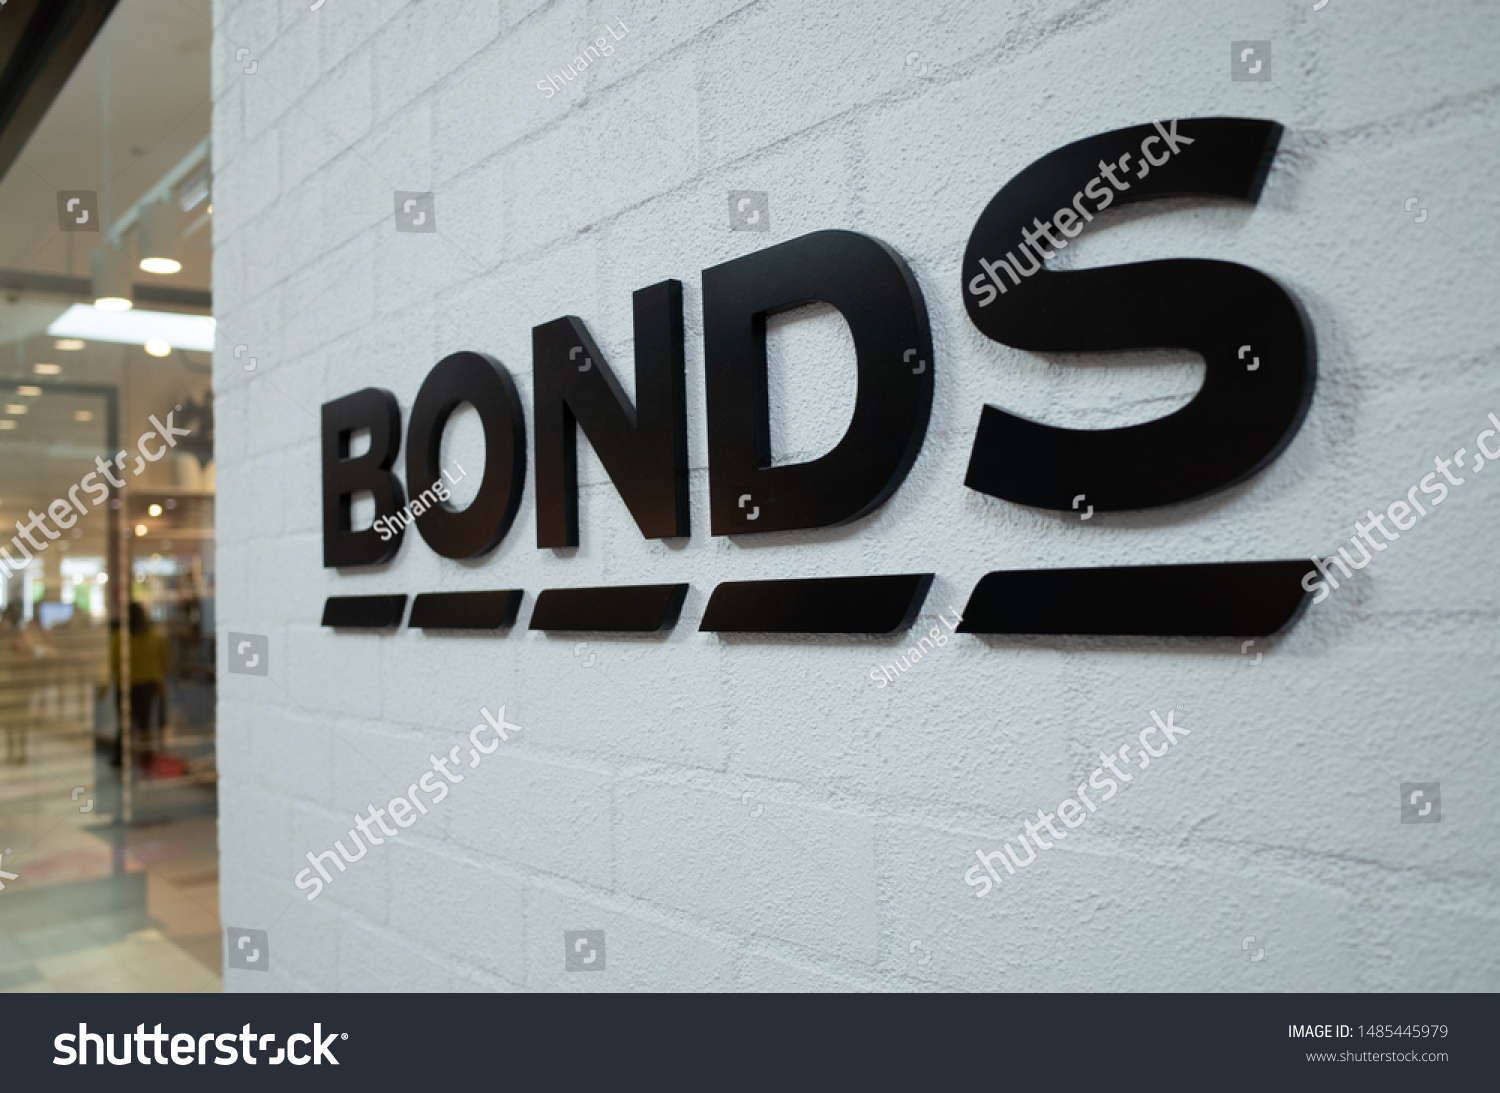 Bonds australia